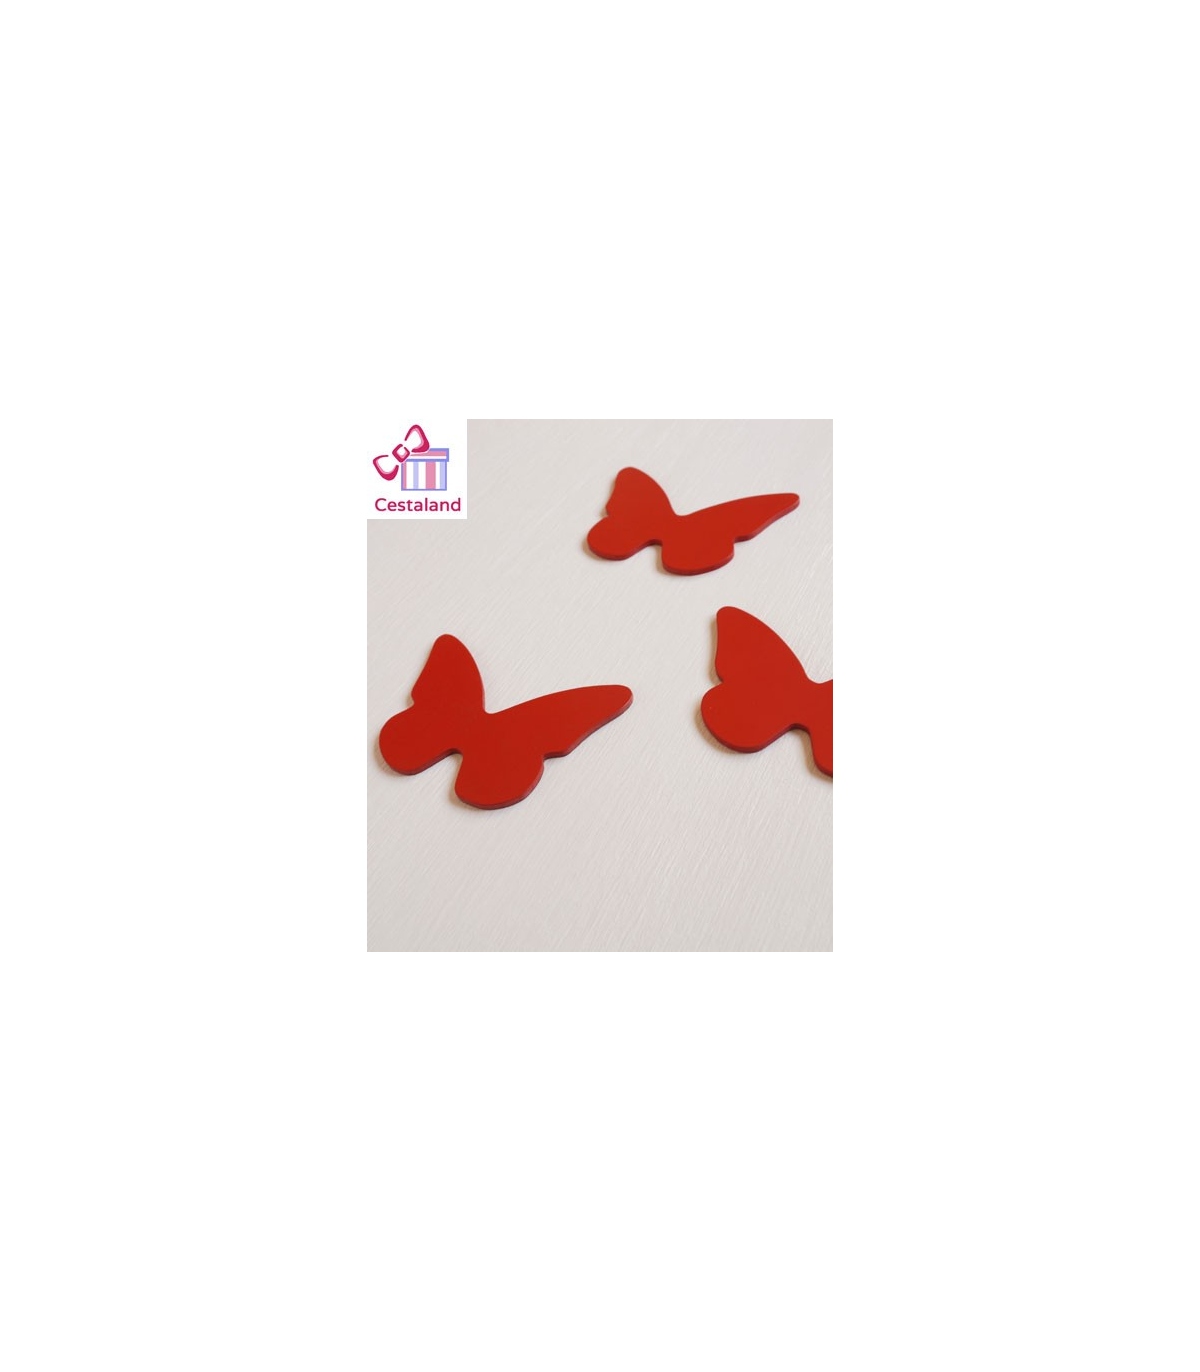 Óxido meteorito Equipo de juegos Mariposa Madera. Comprar Mariposas decorativas en Madera.